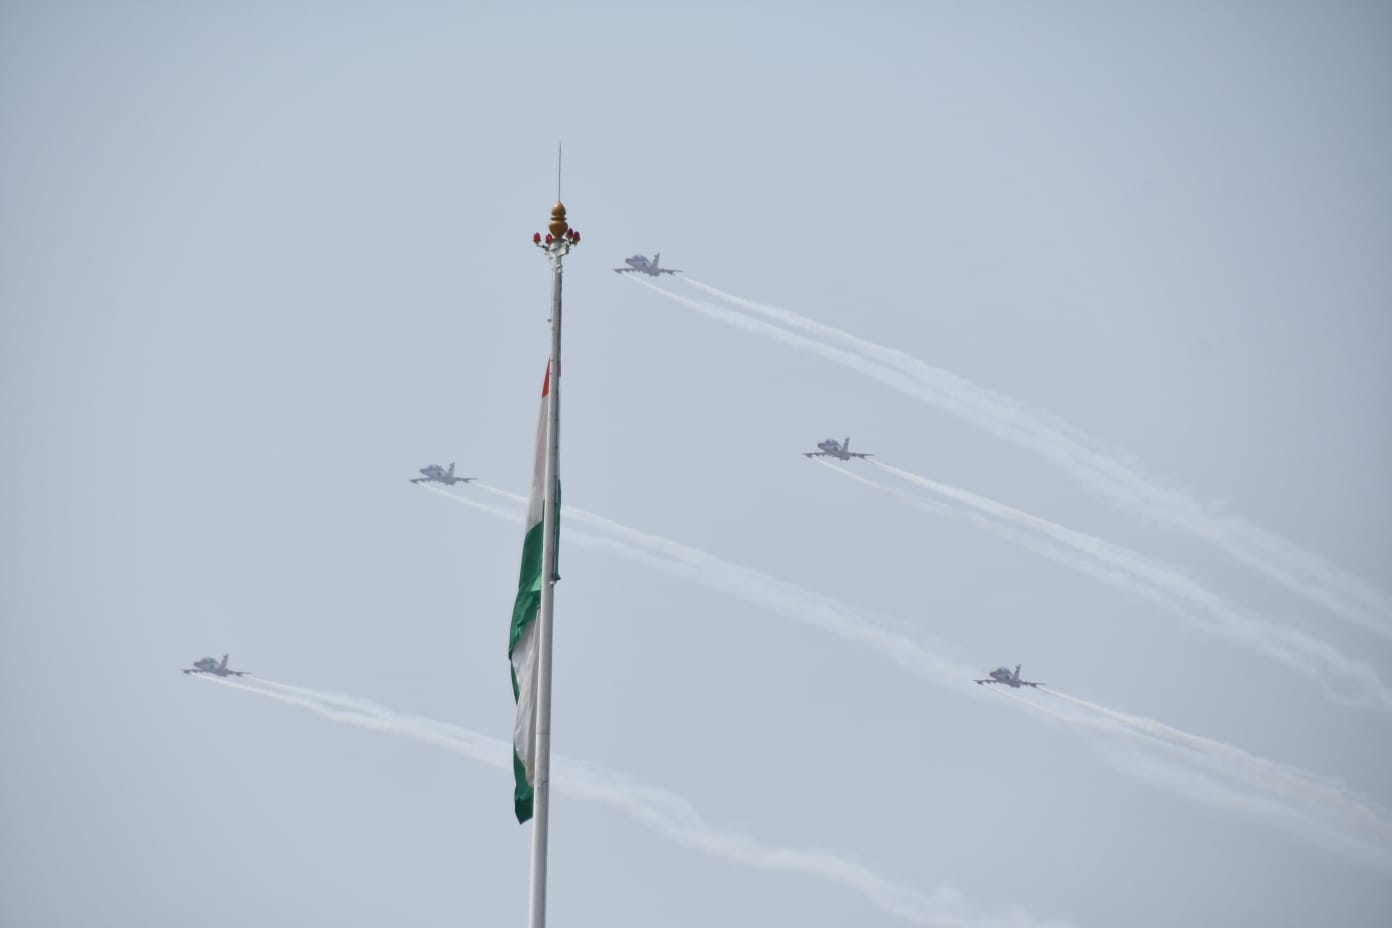 IAF’S SURYA KIRAN AEROBATIC TEAM PERFORMS SPECTACULAR AIR SHOW OVER ITANAGAR.